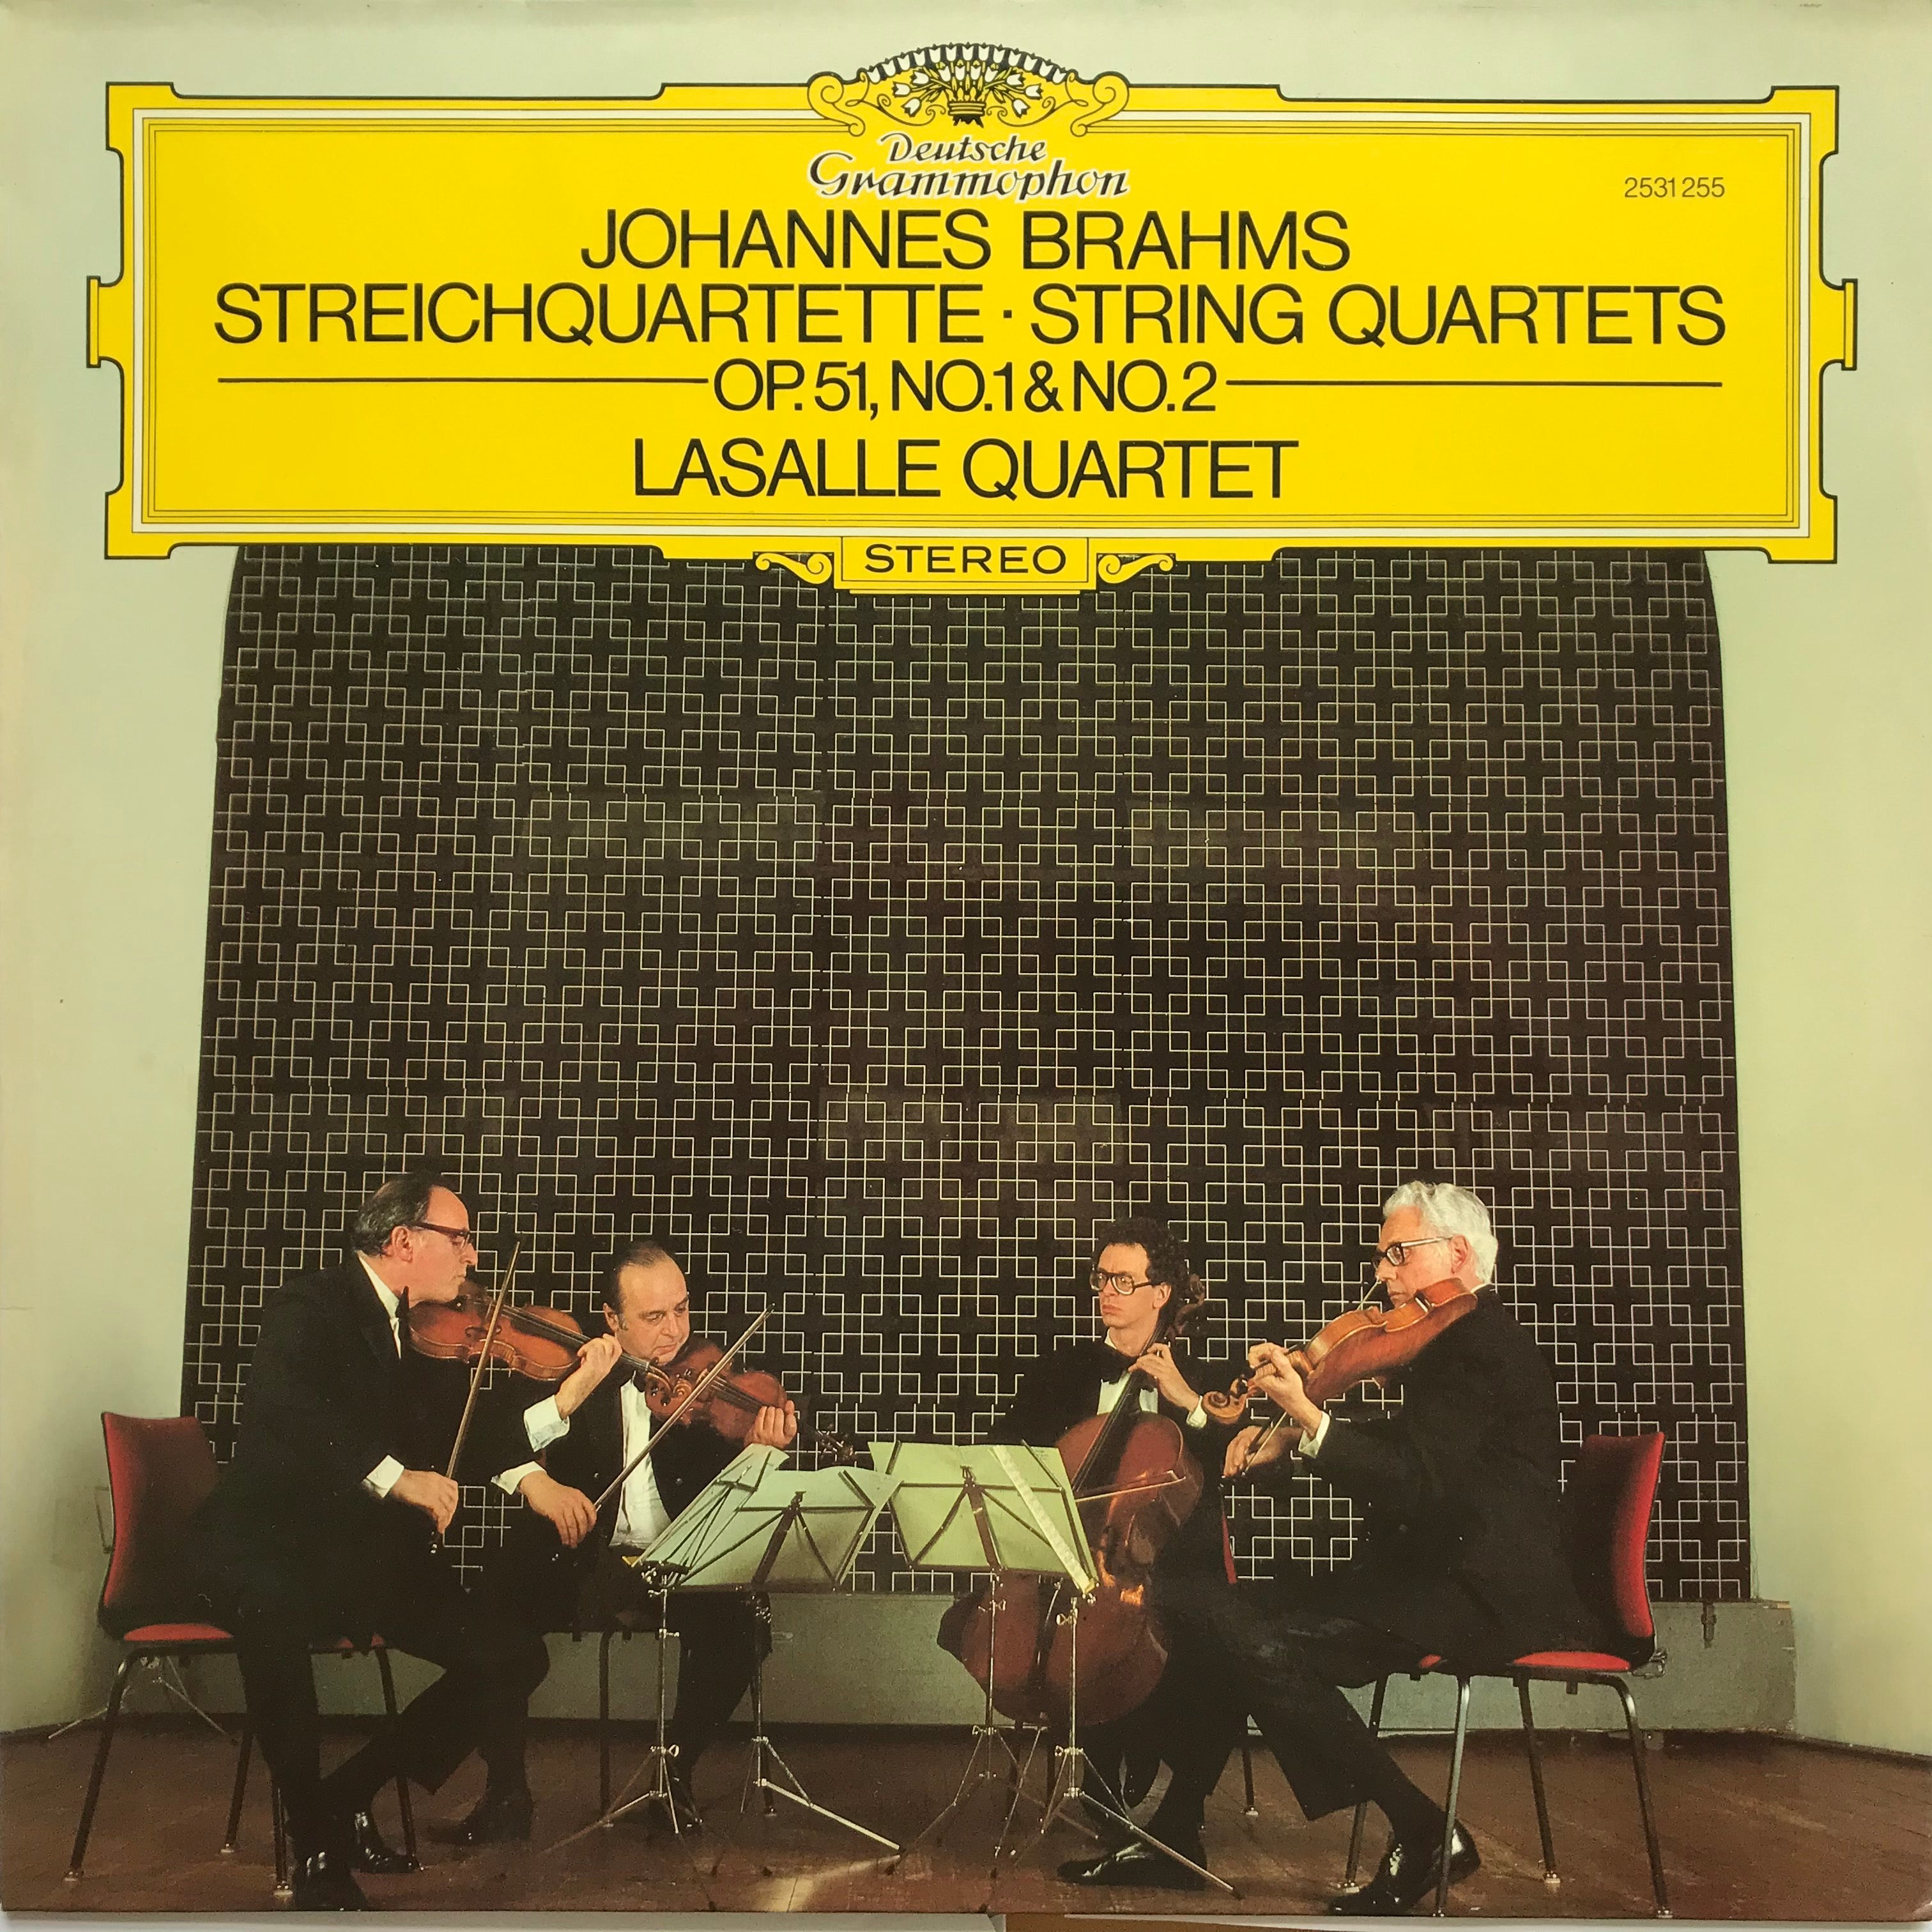 Johannes Brahms, Streichquartette - String Quartets op. 51, No. 1 & No. 2, LaSalle Quartett